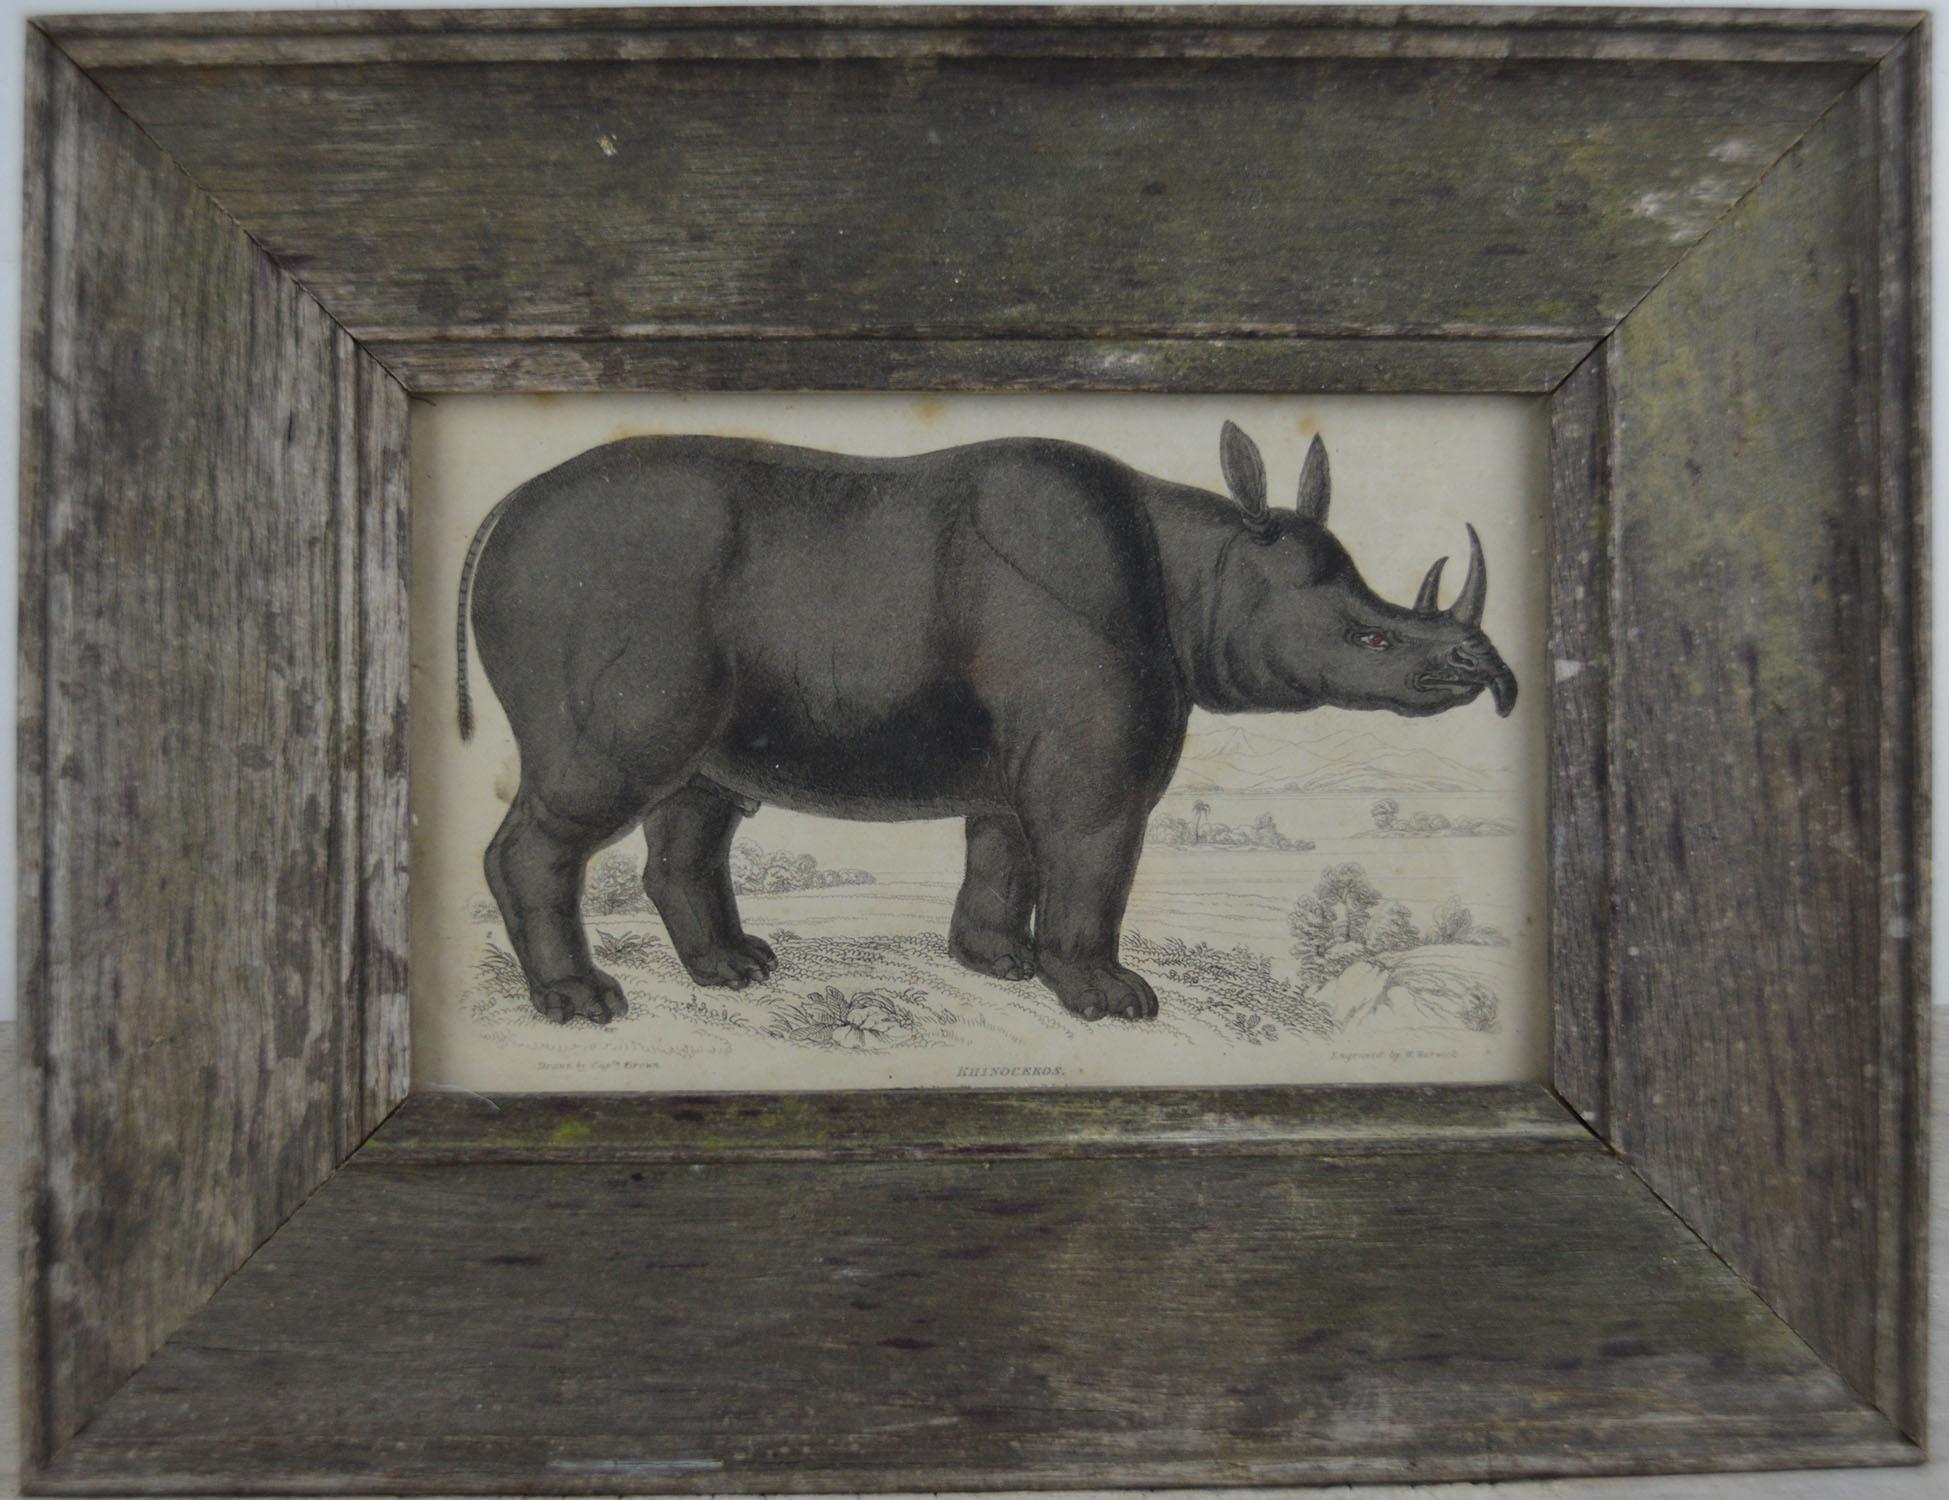 English Original Antique Print of a Rhinoceros, 1830s